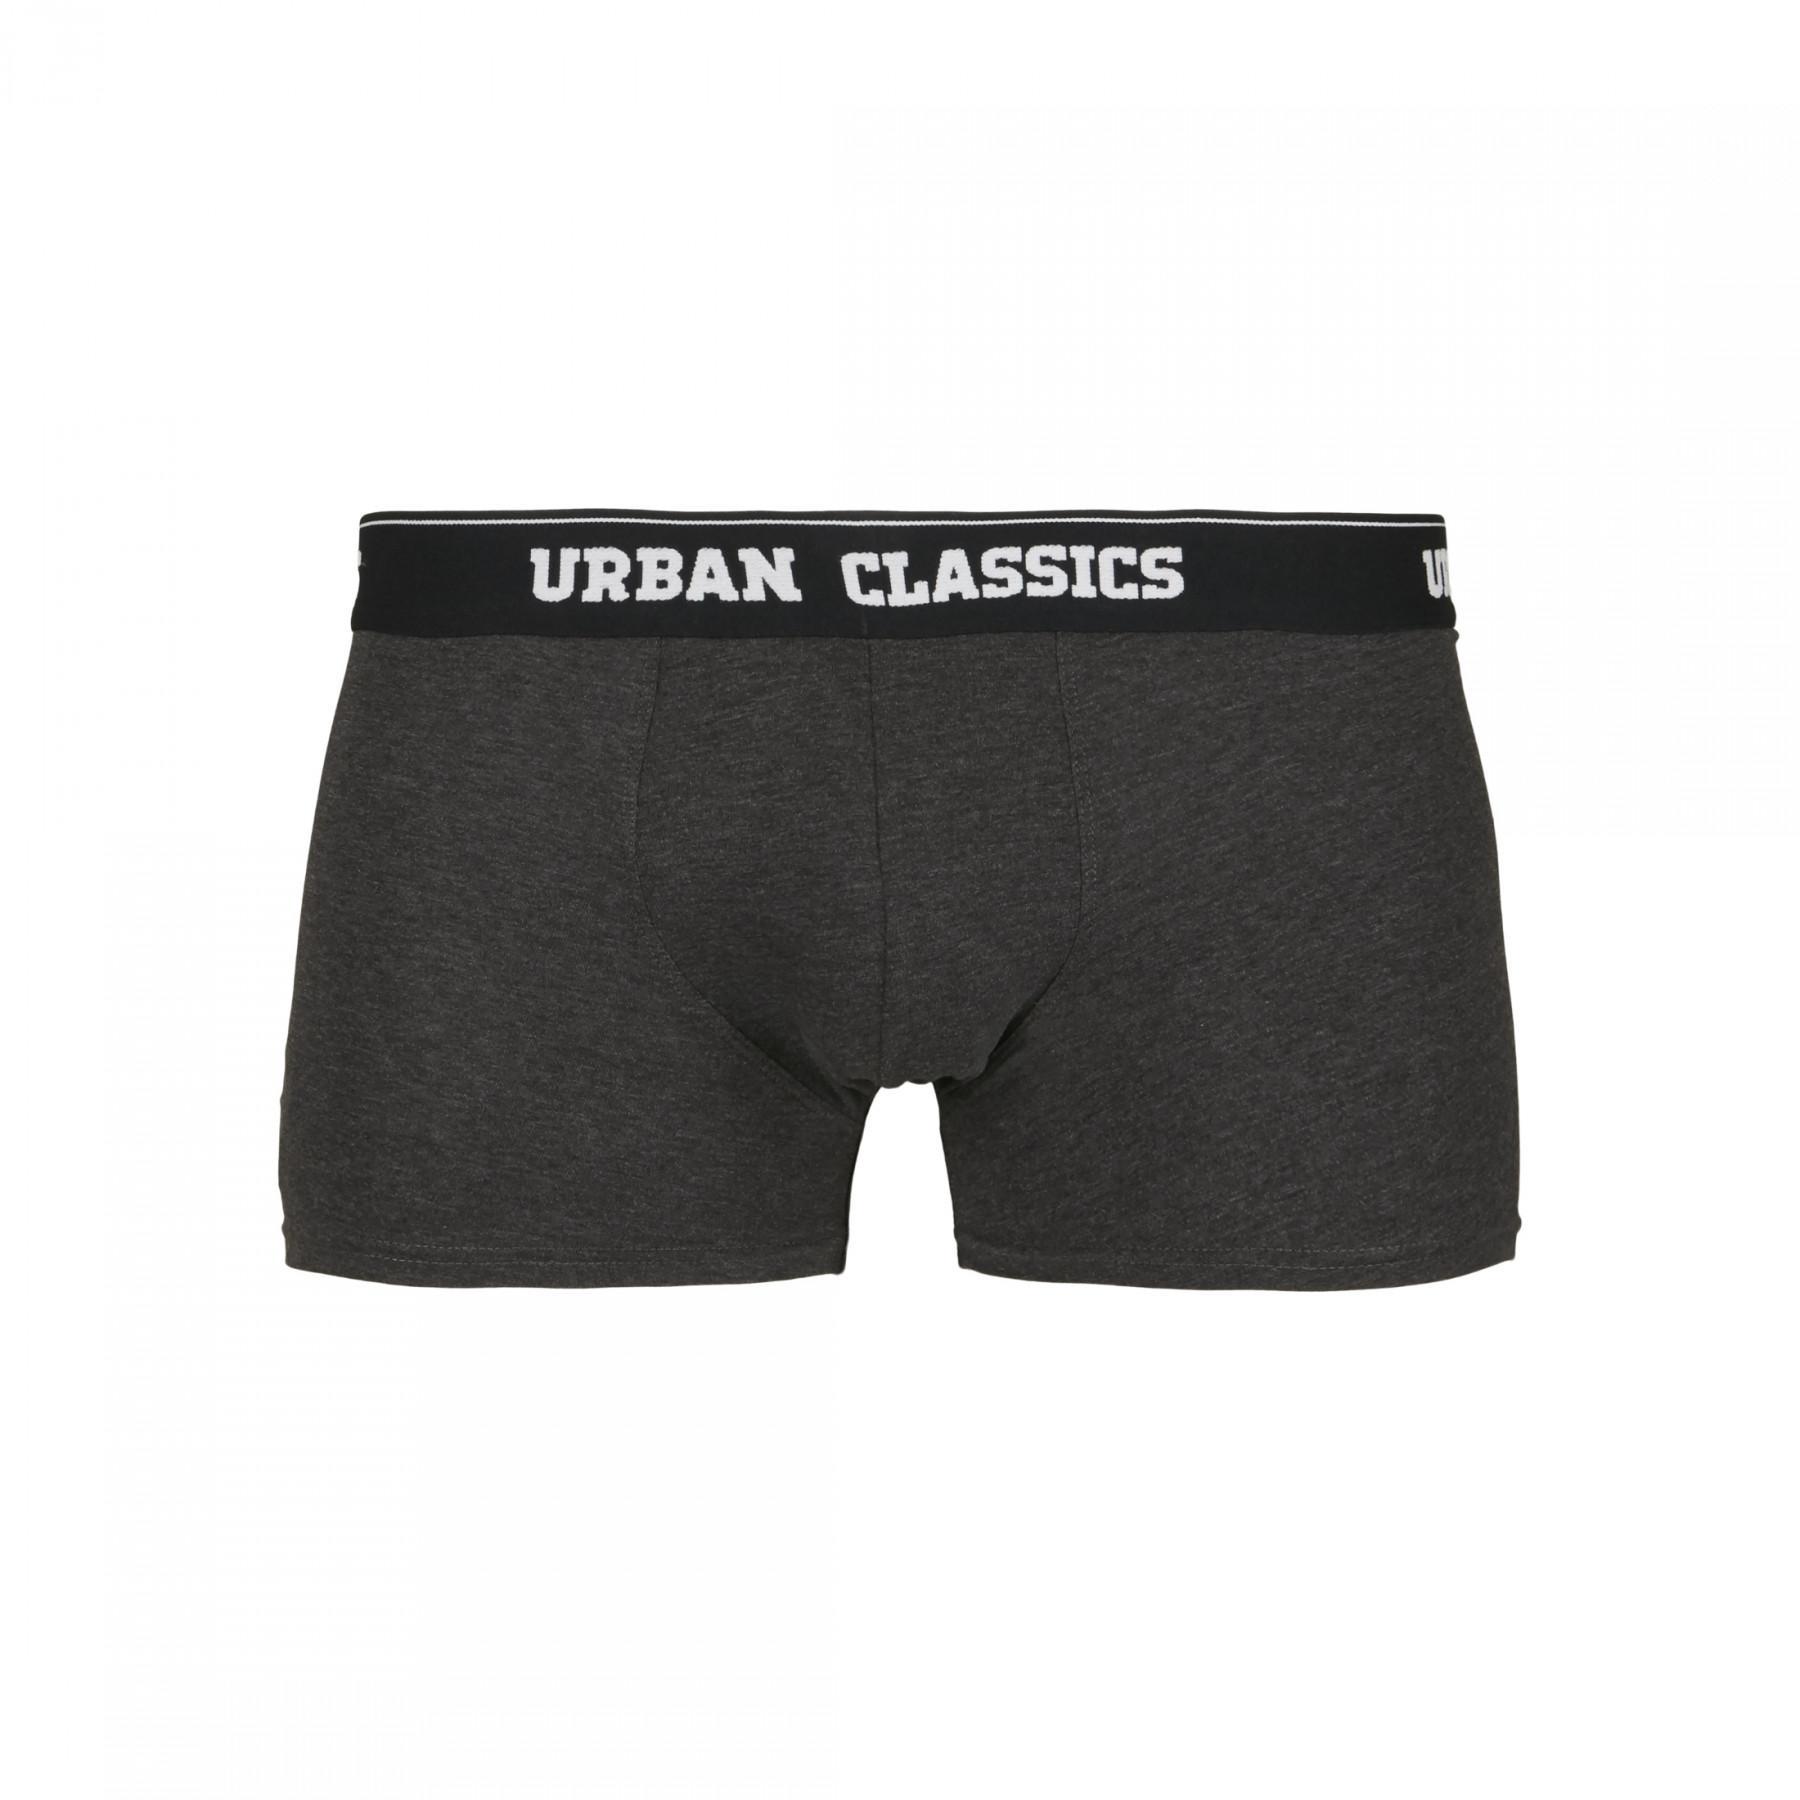 Boxeadores Urban Classics (x5)